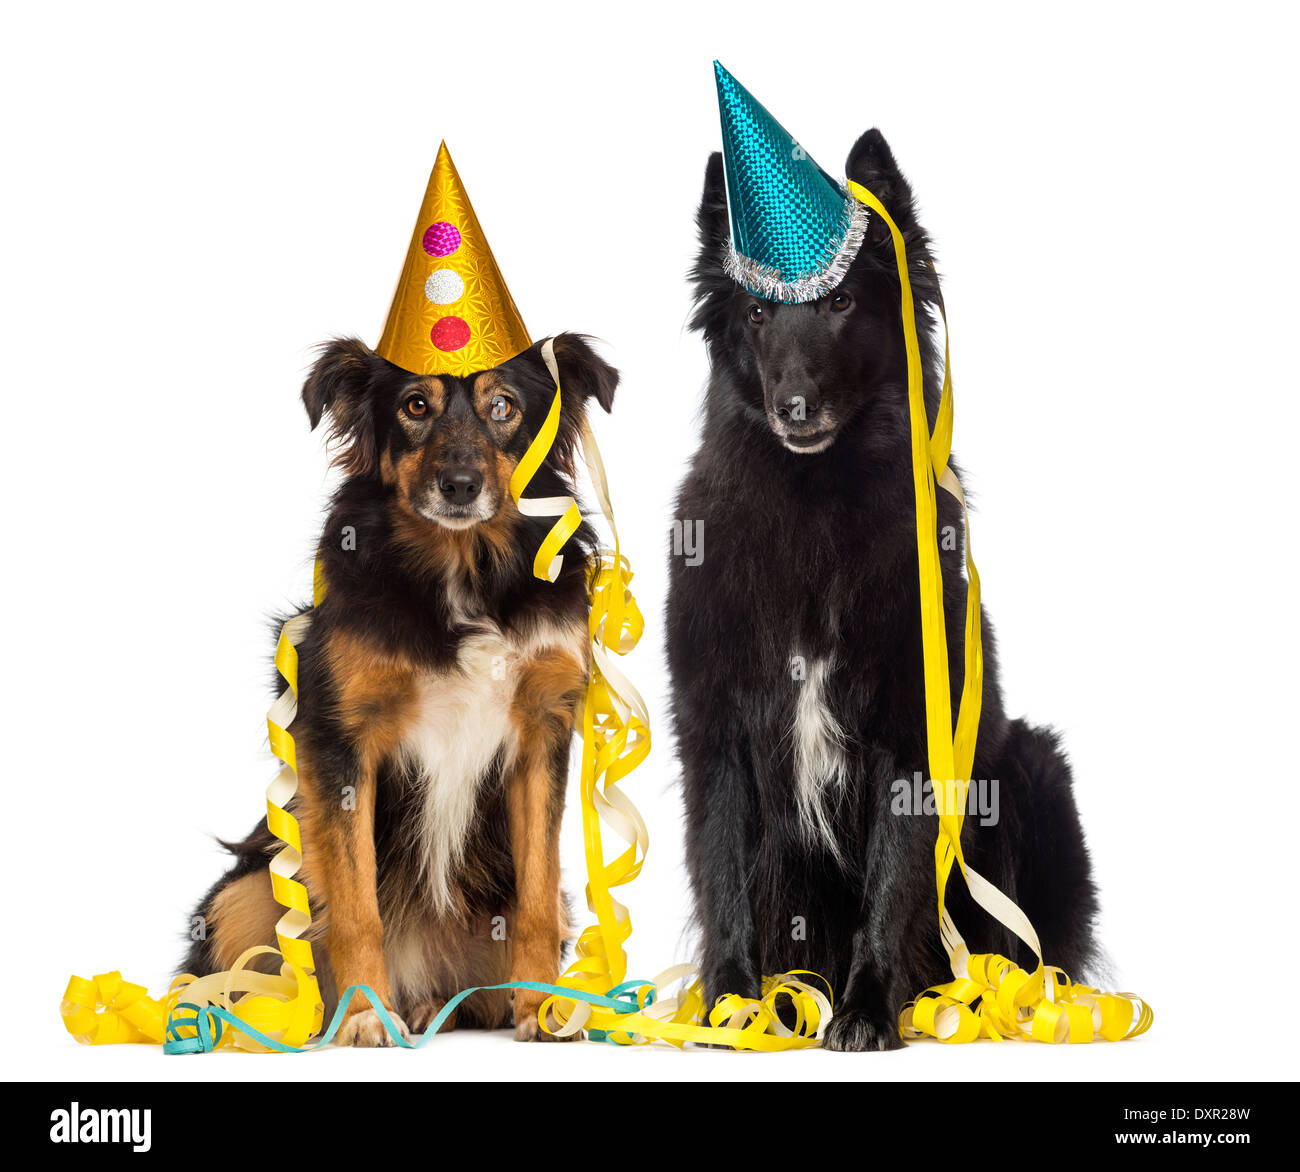 Deux chiens dépressifs wearing a party hat against white background Banque D'Images